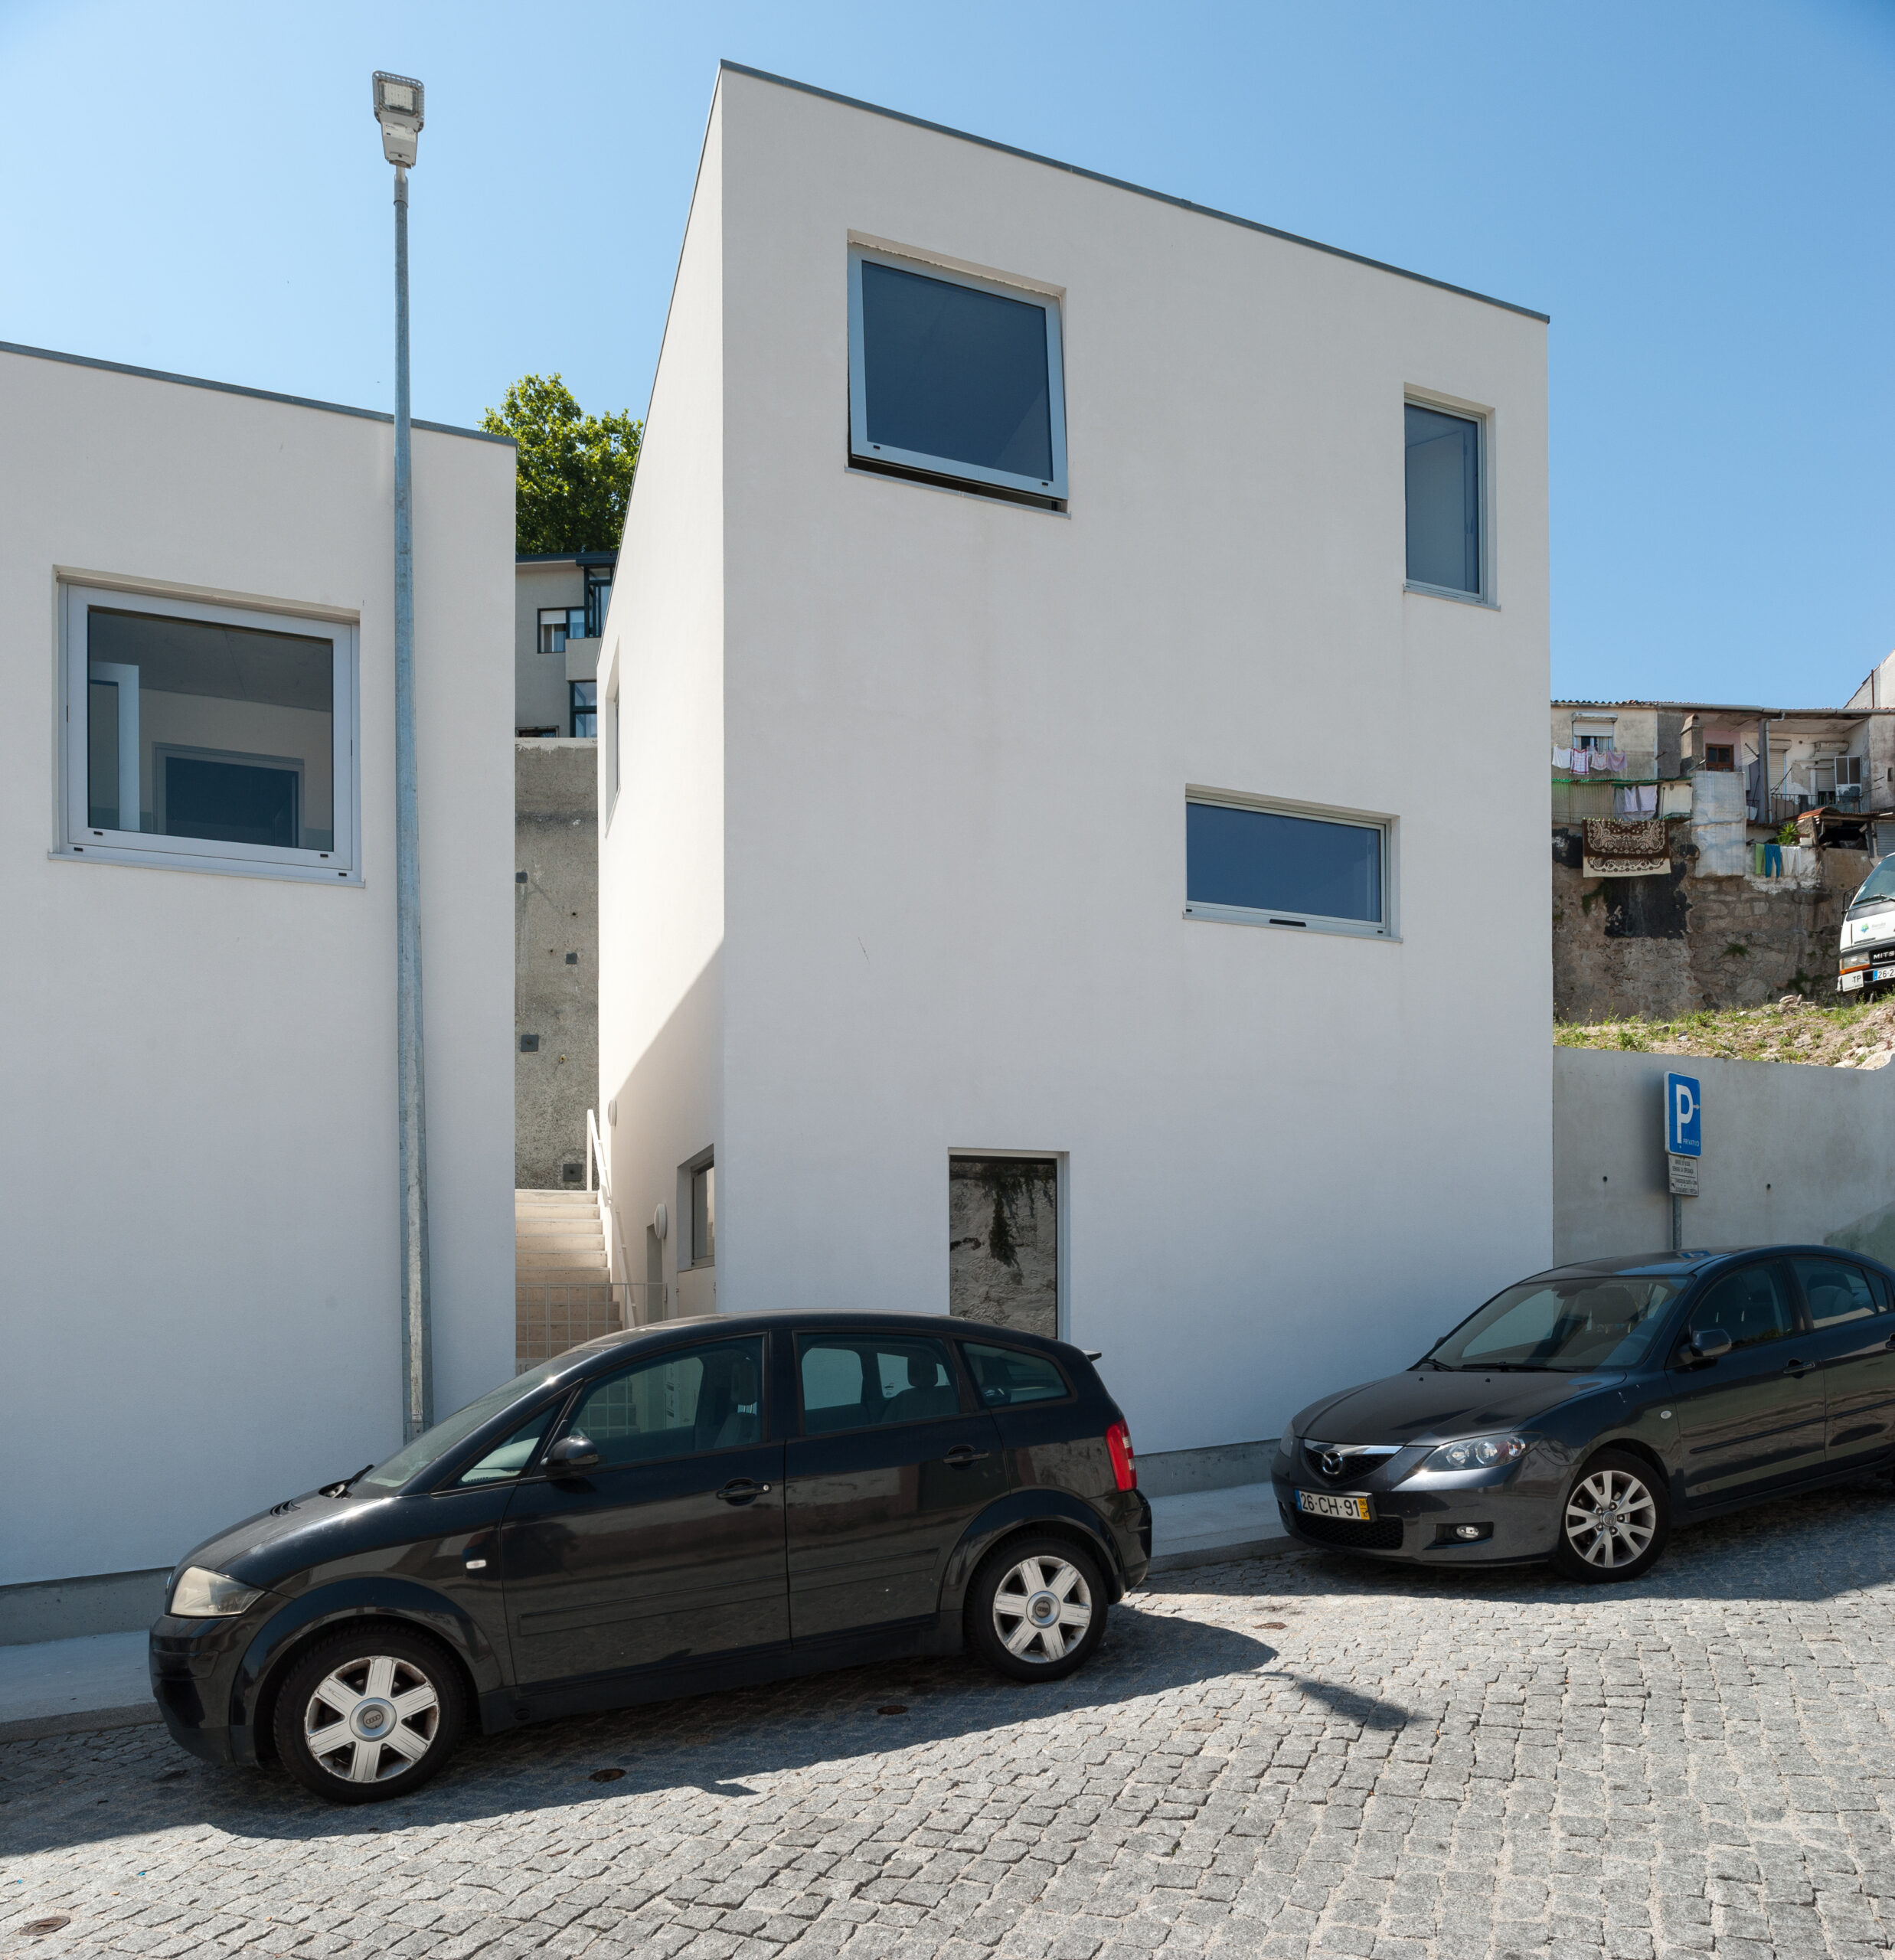 Habitações a custos controlados, Carvalheiras. Domussocial Porto.